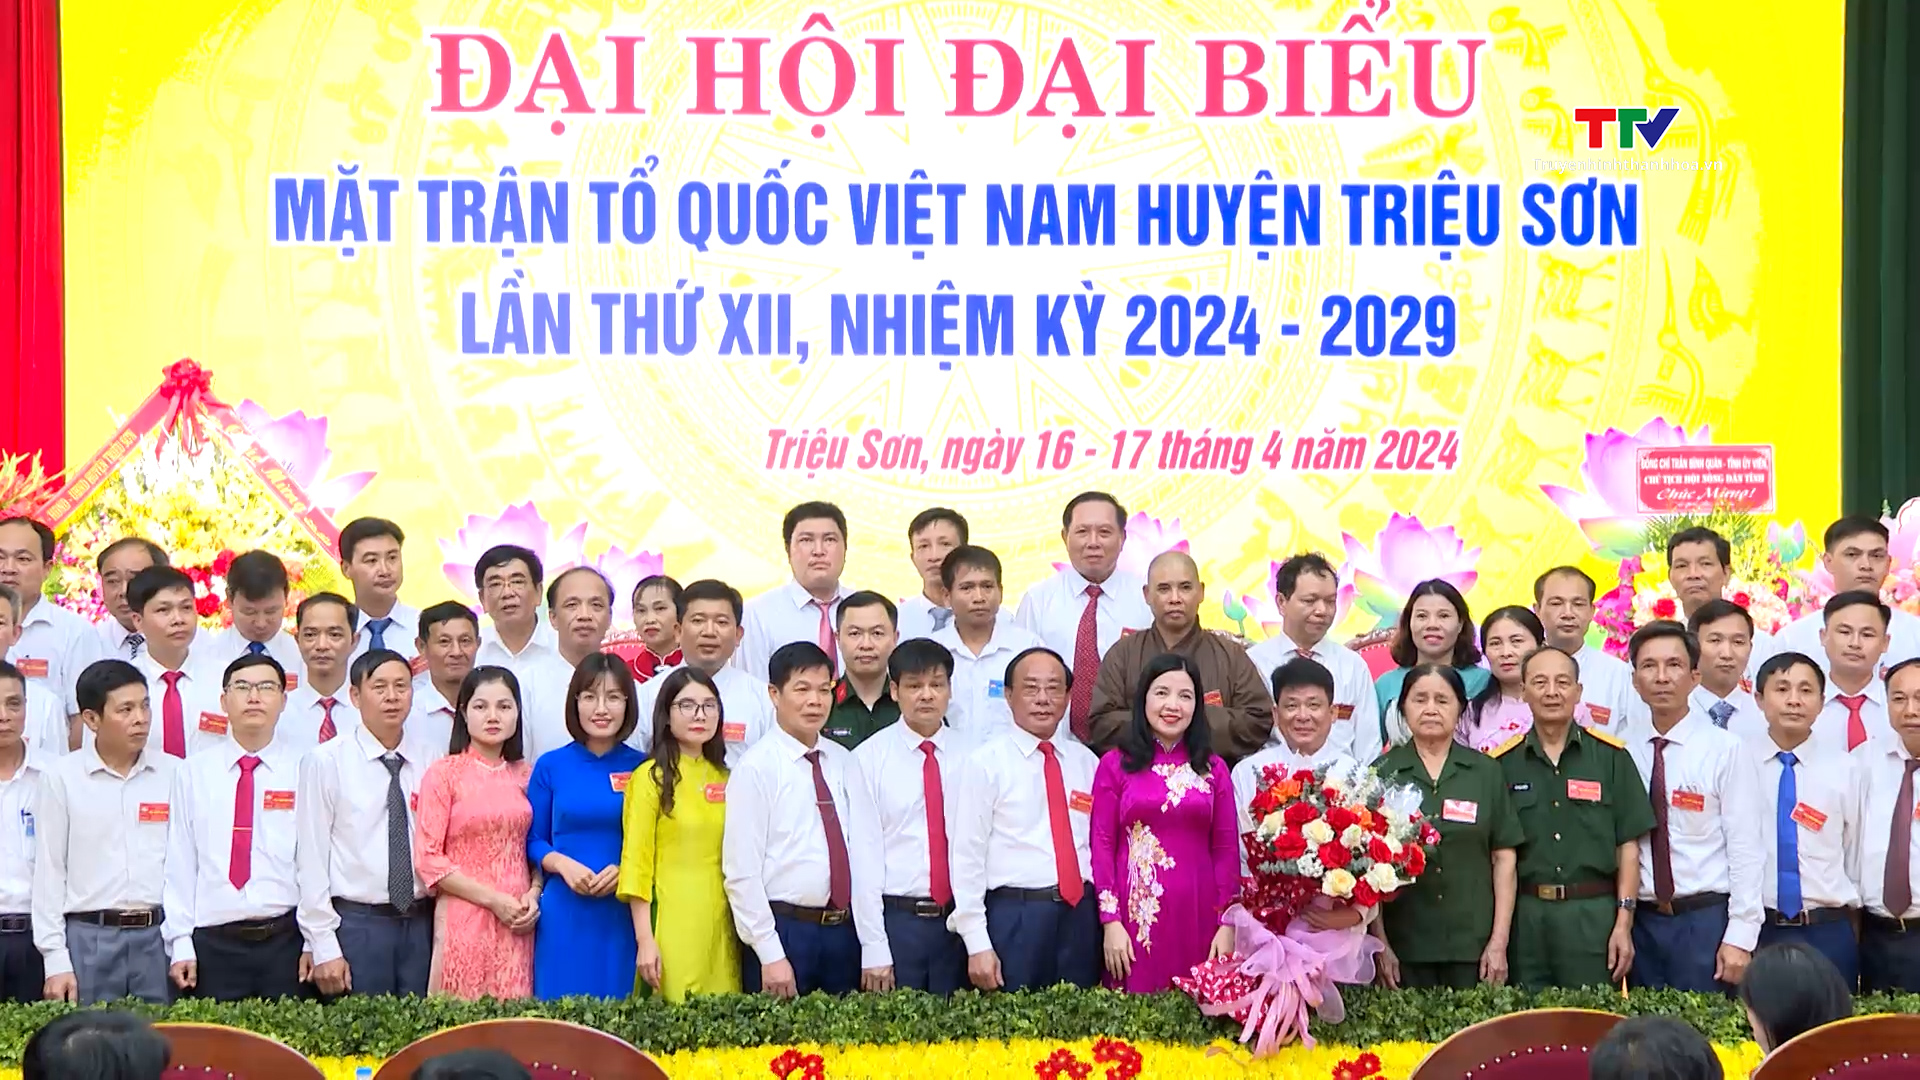 Đại hội đại biểu Mặt trận Tổ quốc huyện Triệu Sơn lần thứ XII, nhiệm kỳ 2024 - 2029- Ảnh 3.